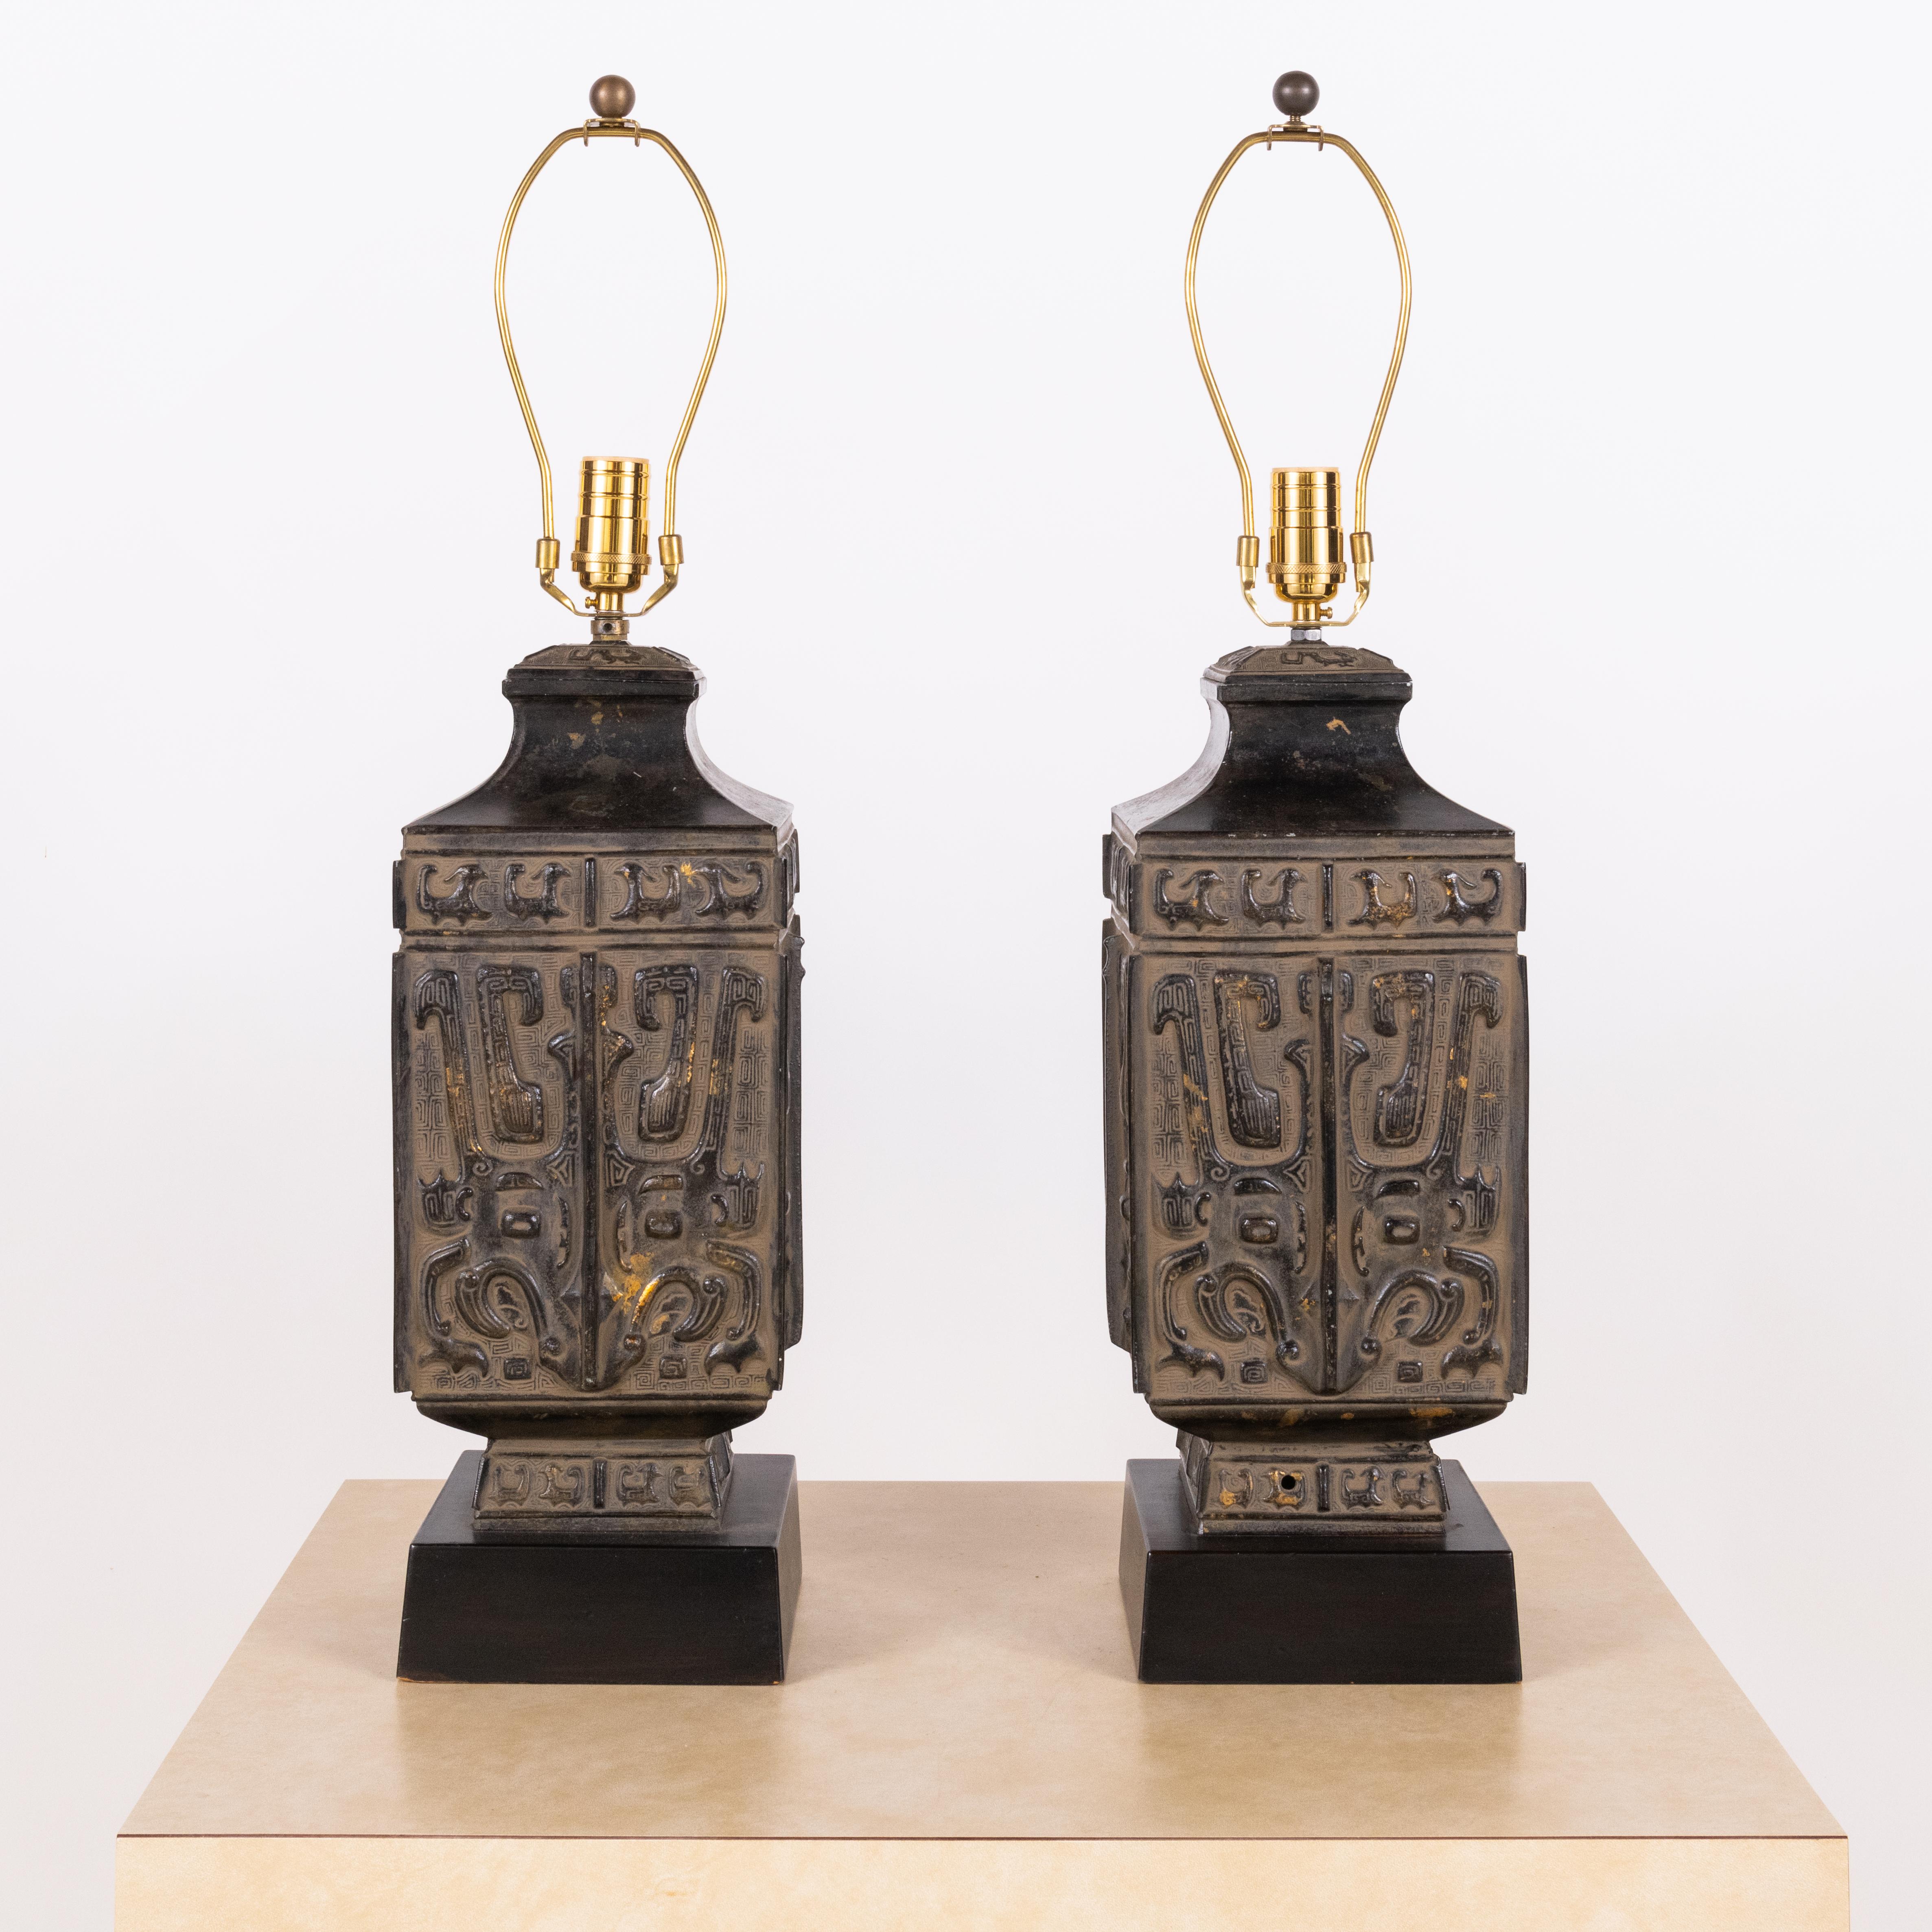 Paire de lampes chinoises en bronze de style Hollywood Regency dans le style de James Mont.

Belle patine.